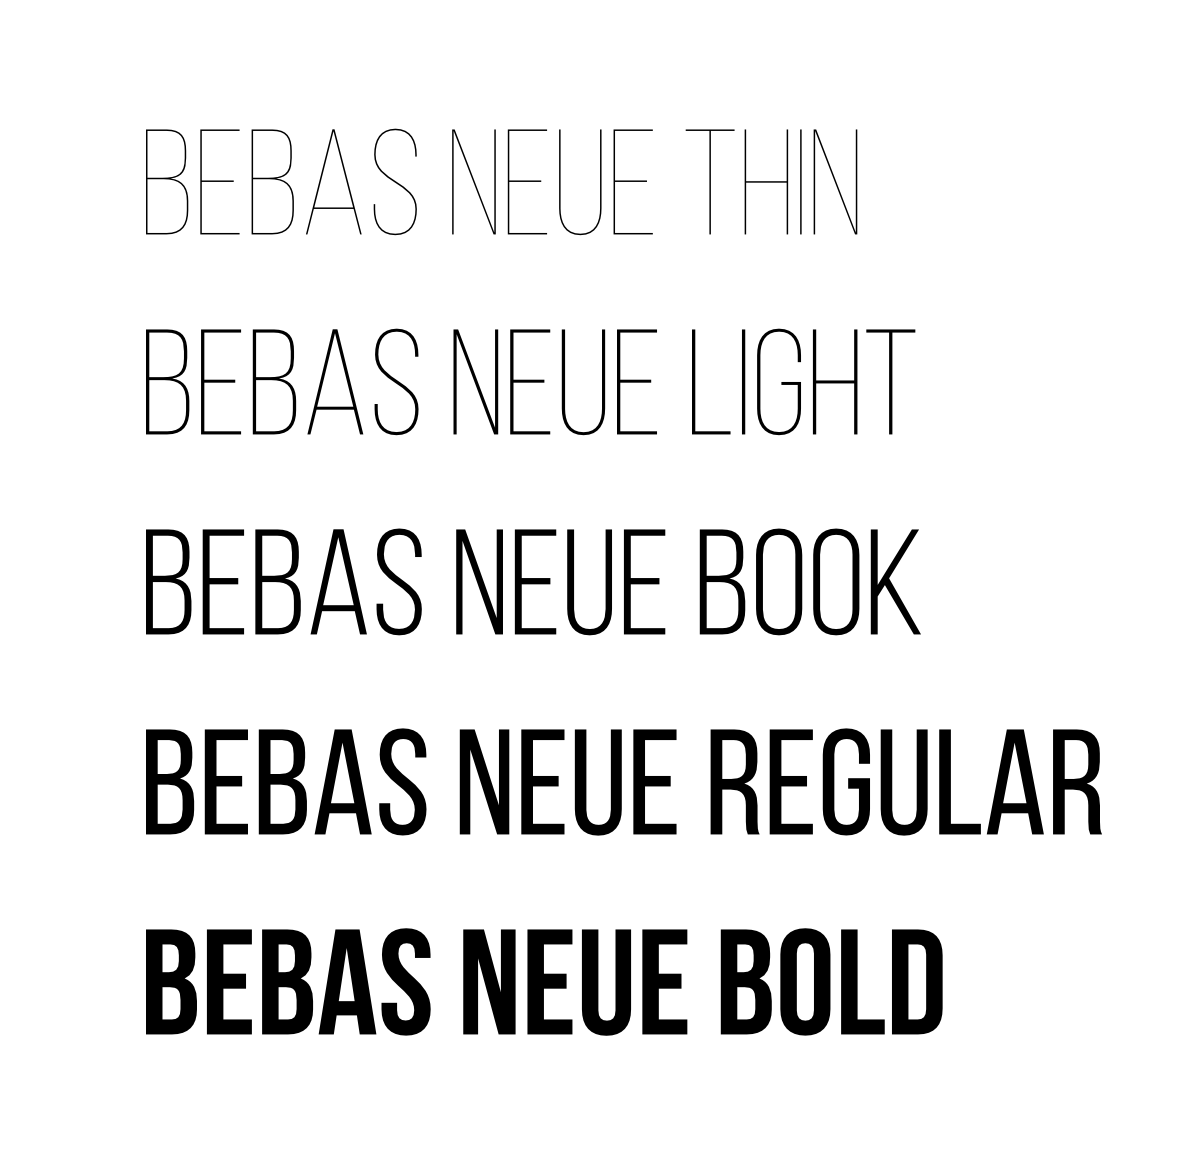 Bebas Neue Font still doesn't work - Pre 1.8 Designer Bugs found ...